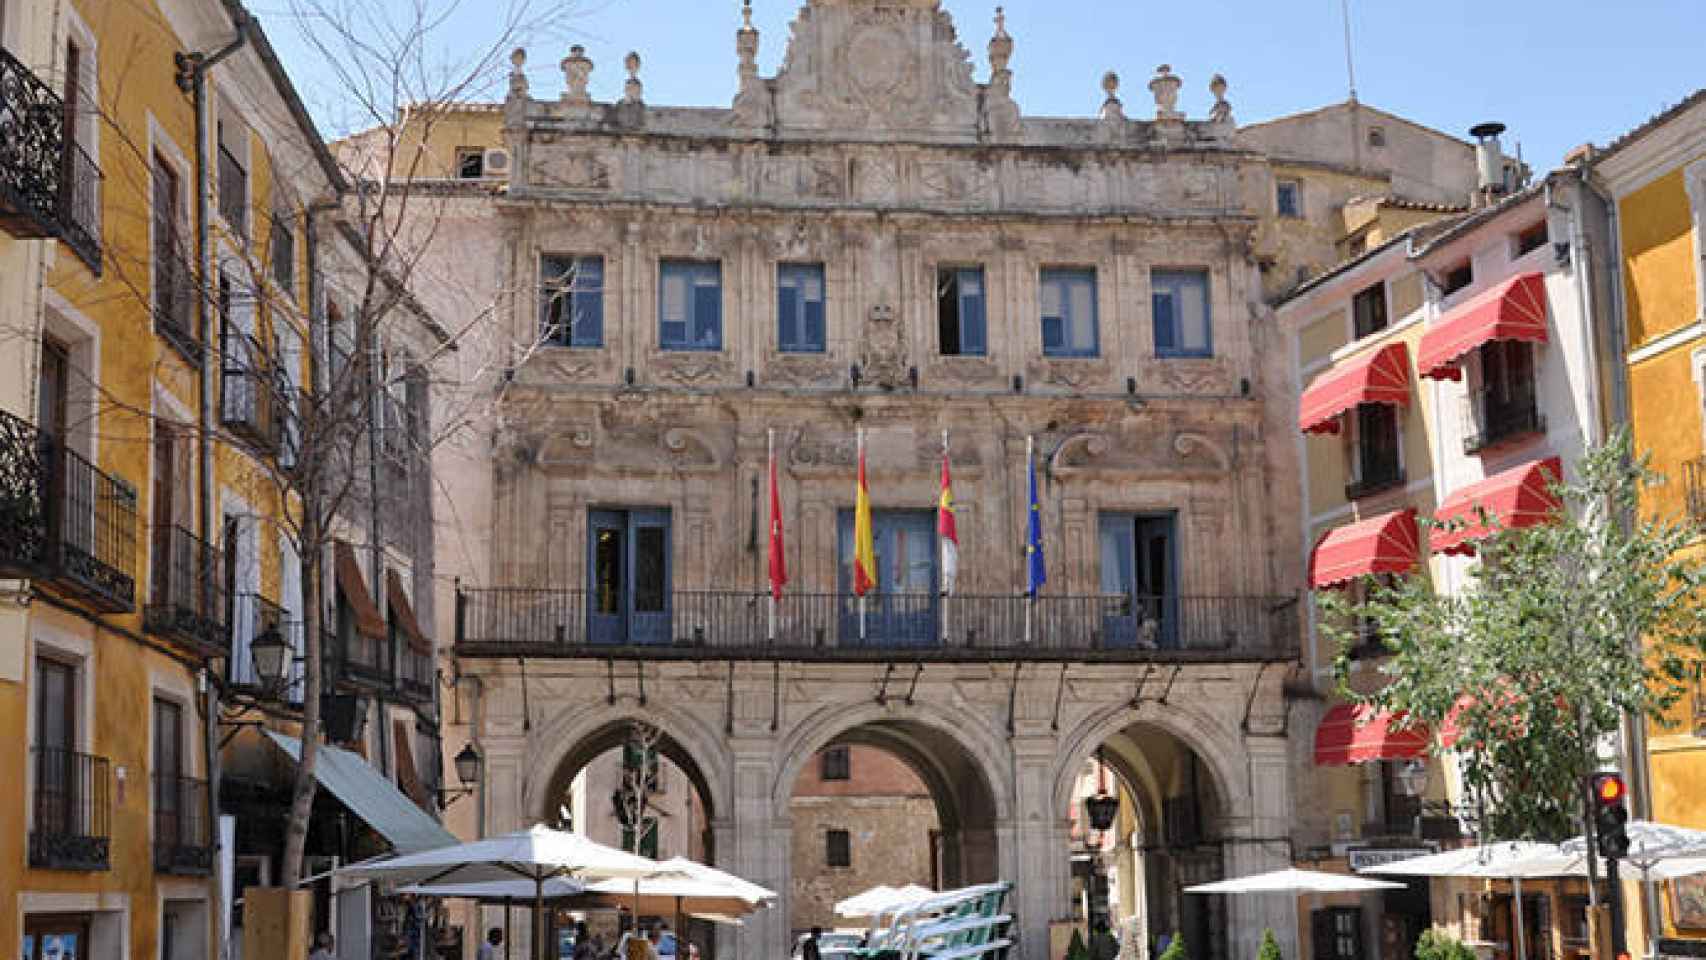 FOTO: Ayuntamiento de Cuenca (Turismo Castilla-La Mancha)